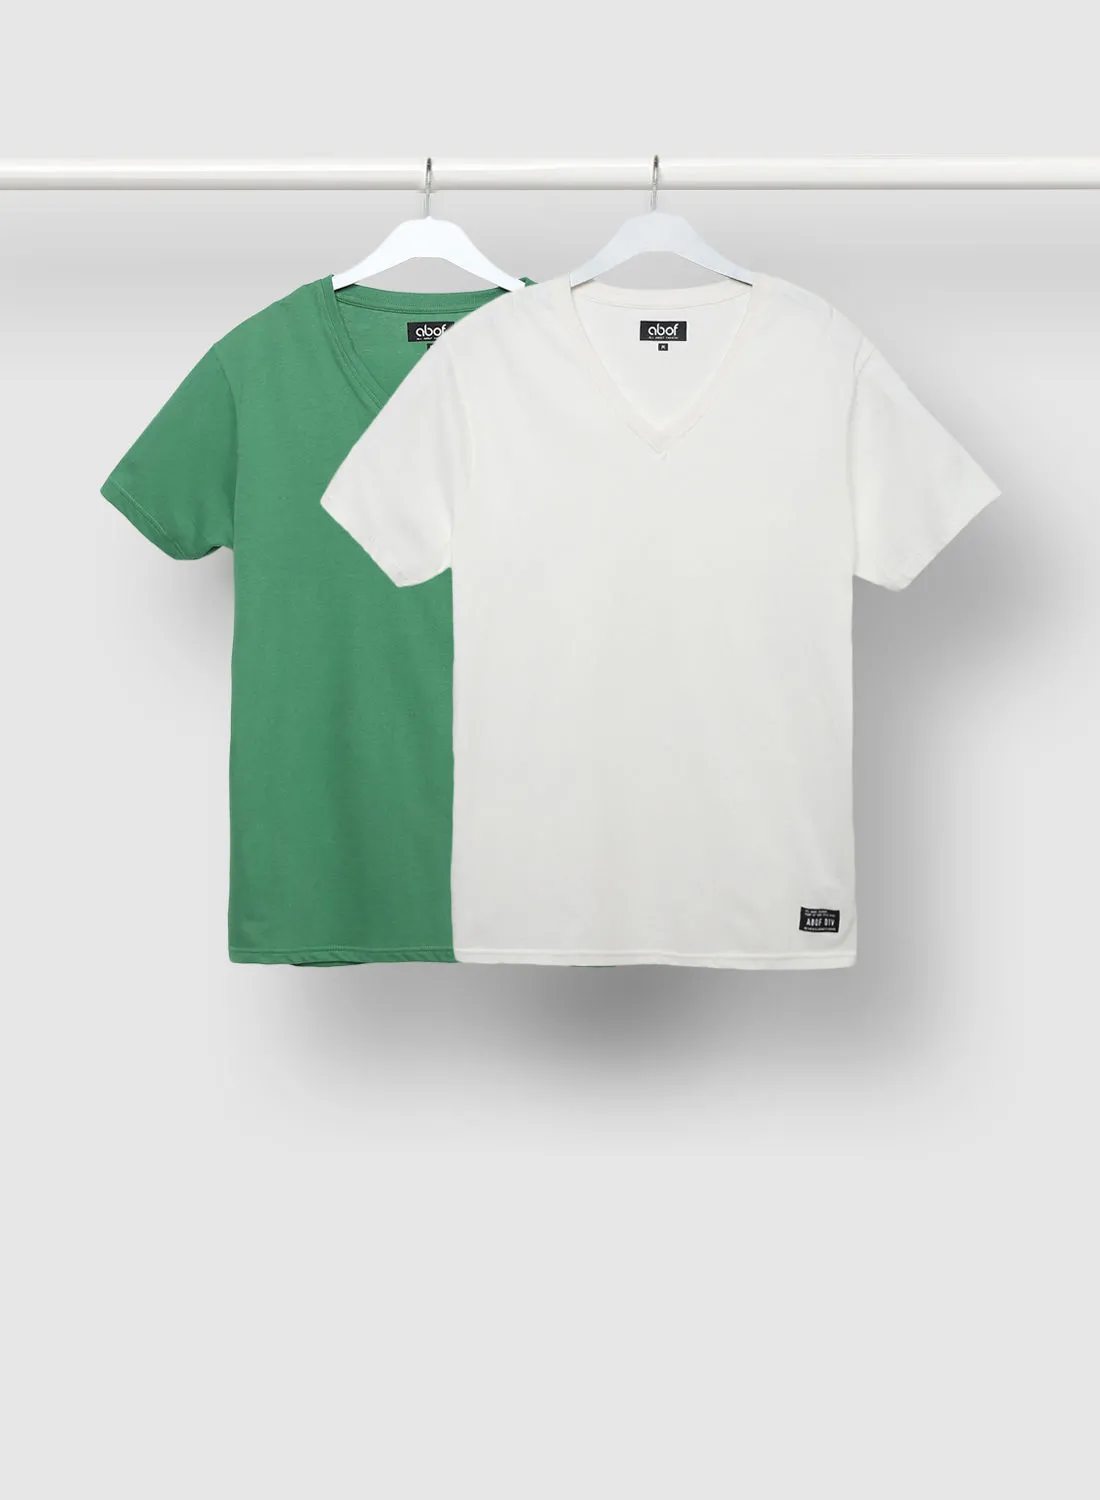 ABOF 2 Pack Of V-Neck Regular Fit Plain T-Shirt White/Green